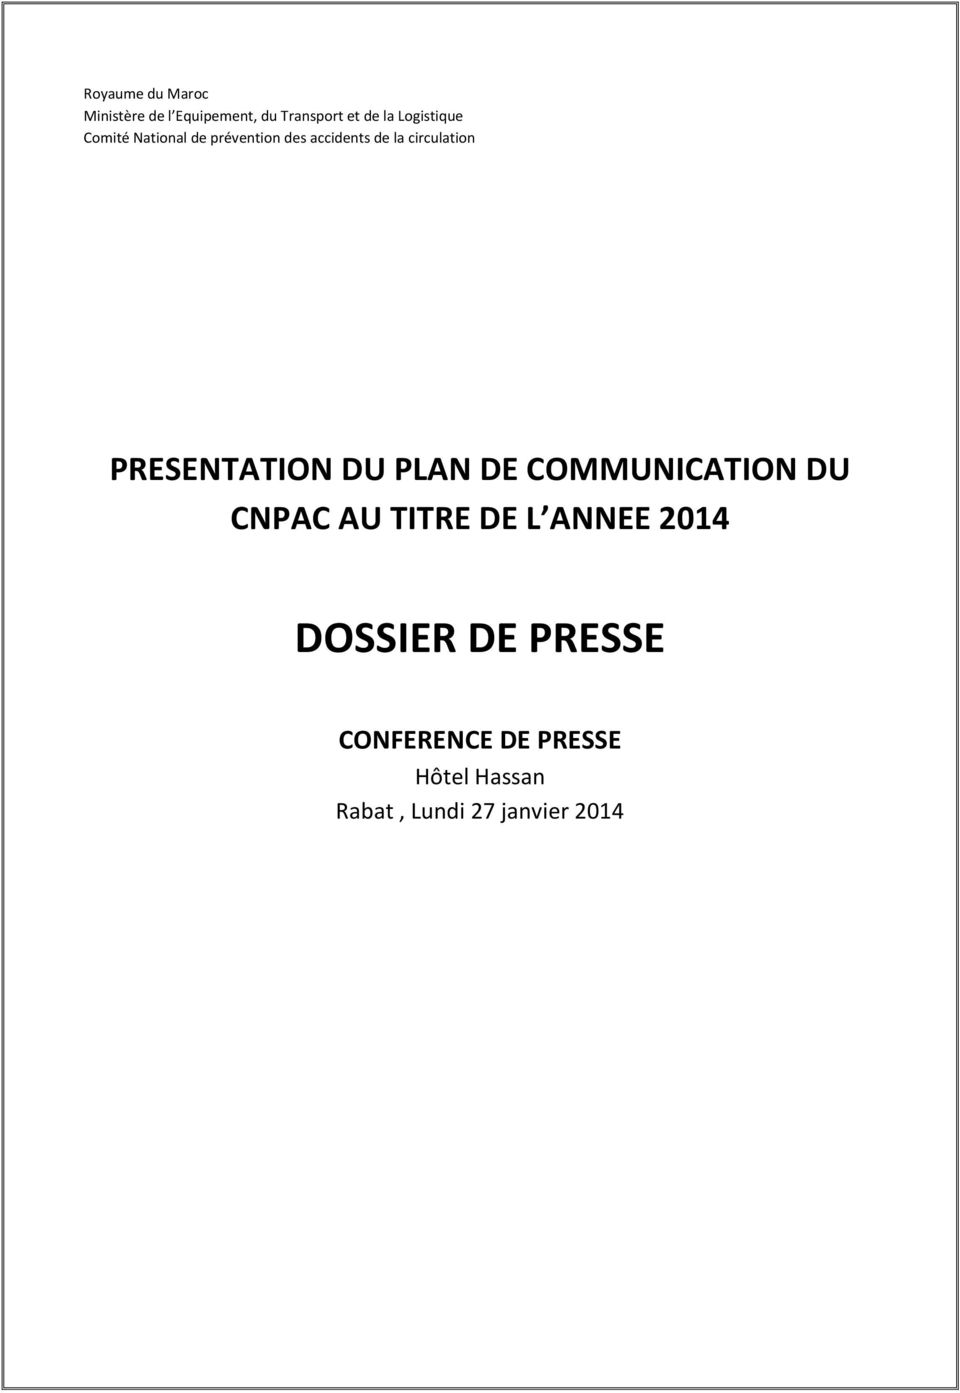 PRESENTATION DU PLAN DE COMMUNICATION DU CNPAC AU TITRE DE L ANNEE 2014